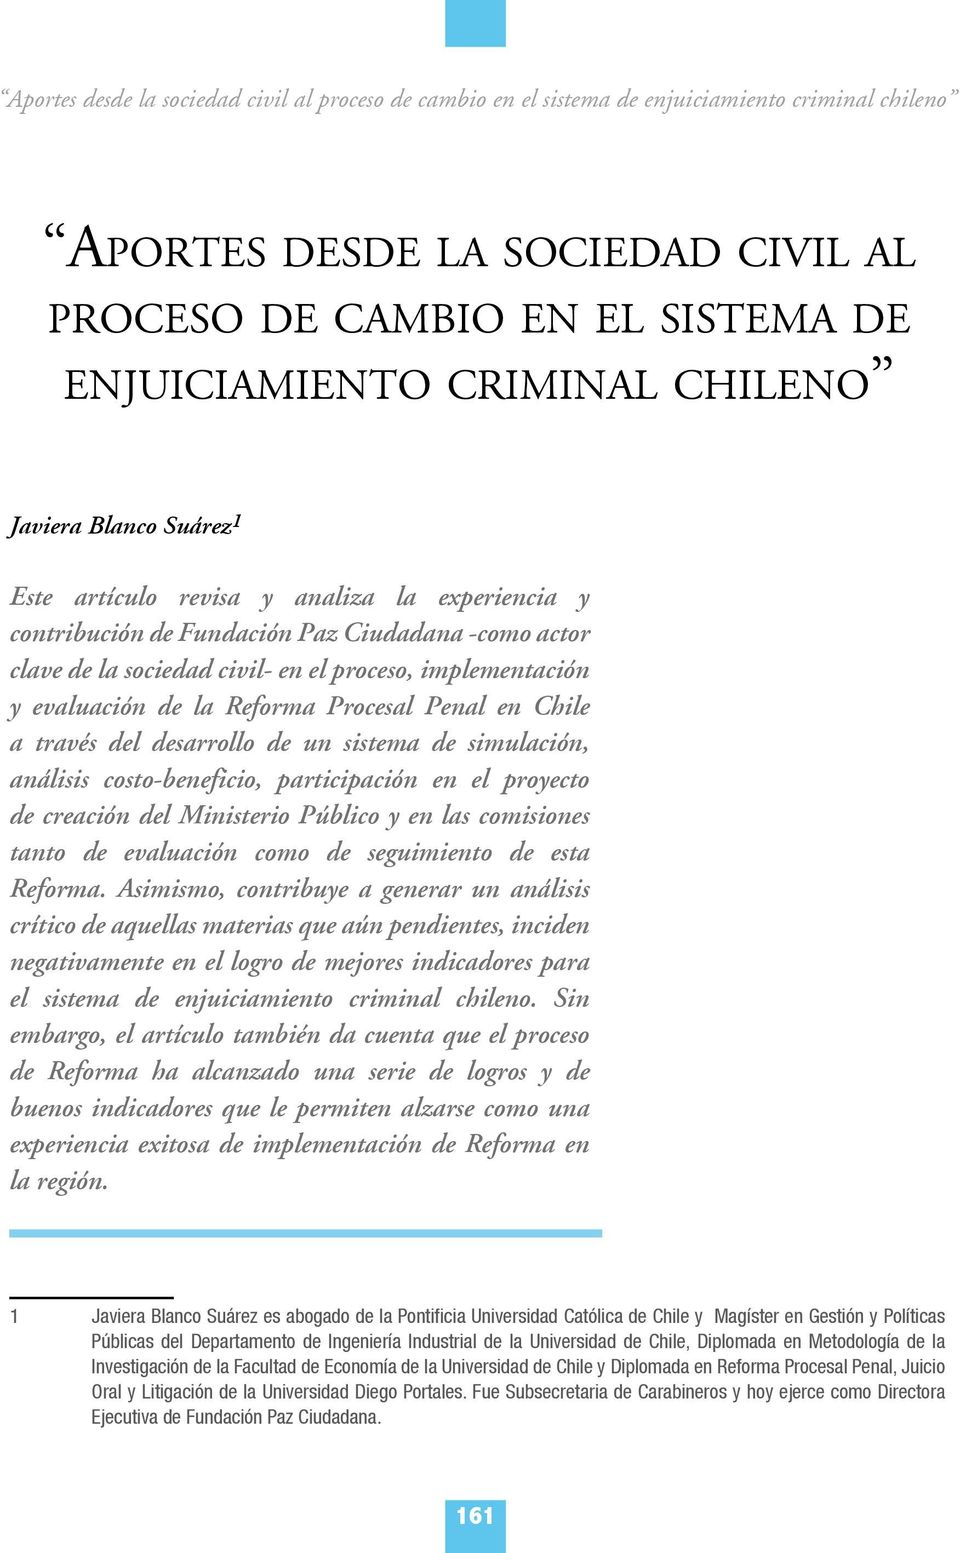 evaluación de la Reforma Procesal Penal en Chile a través del desarrollo de un sistema de simulación, análisis costo-beneficio, participación en el proyecto de creación del Ministerio Público y en